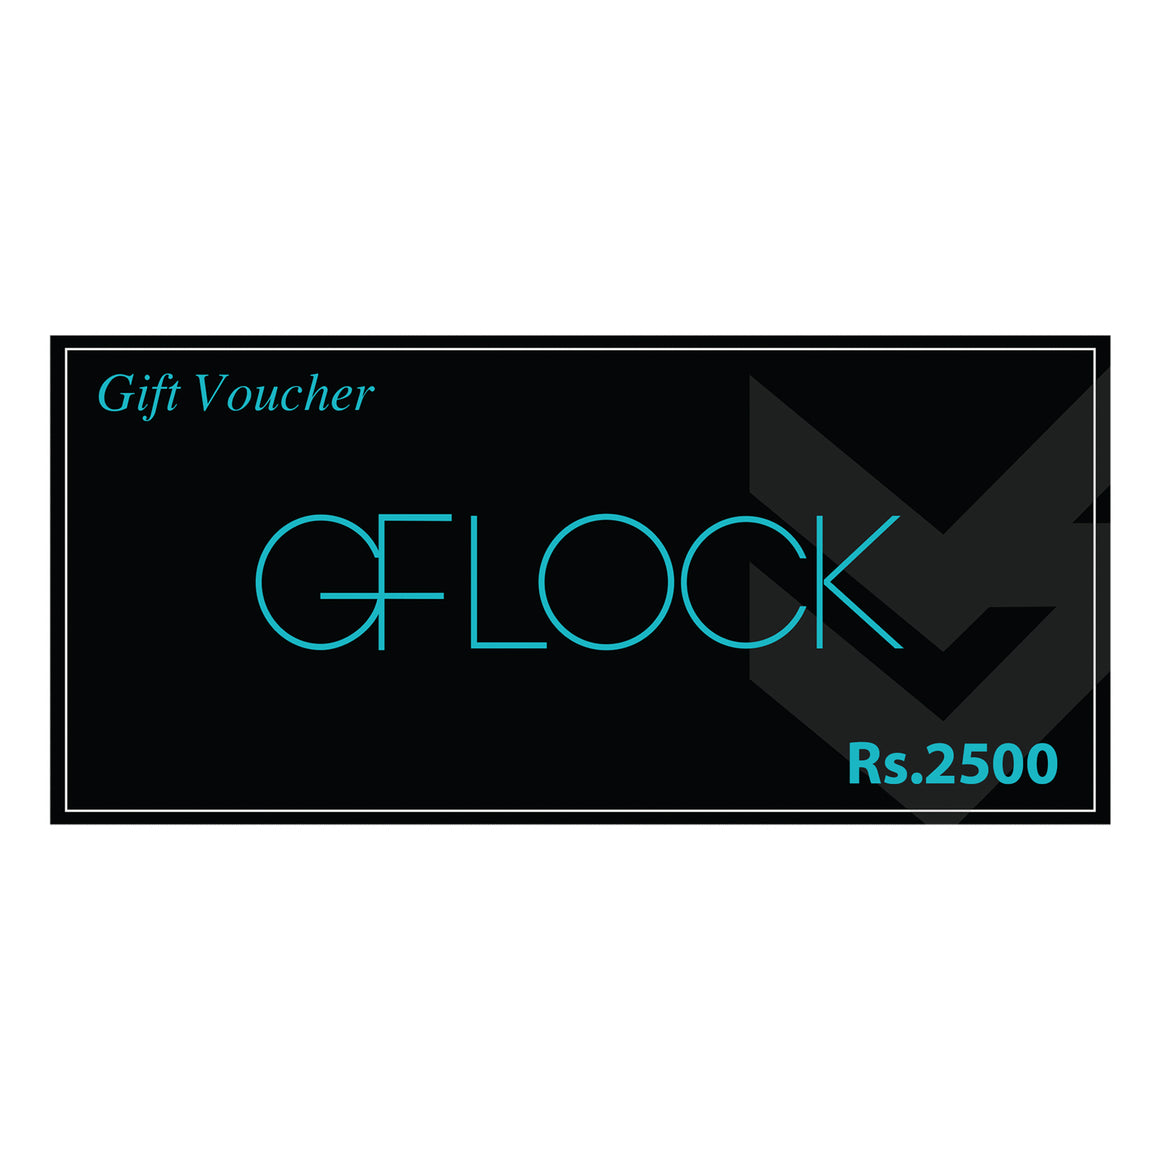 GFLOCK GIFT VOUCHER - LKR 2500